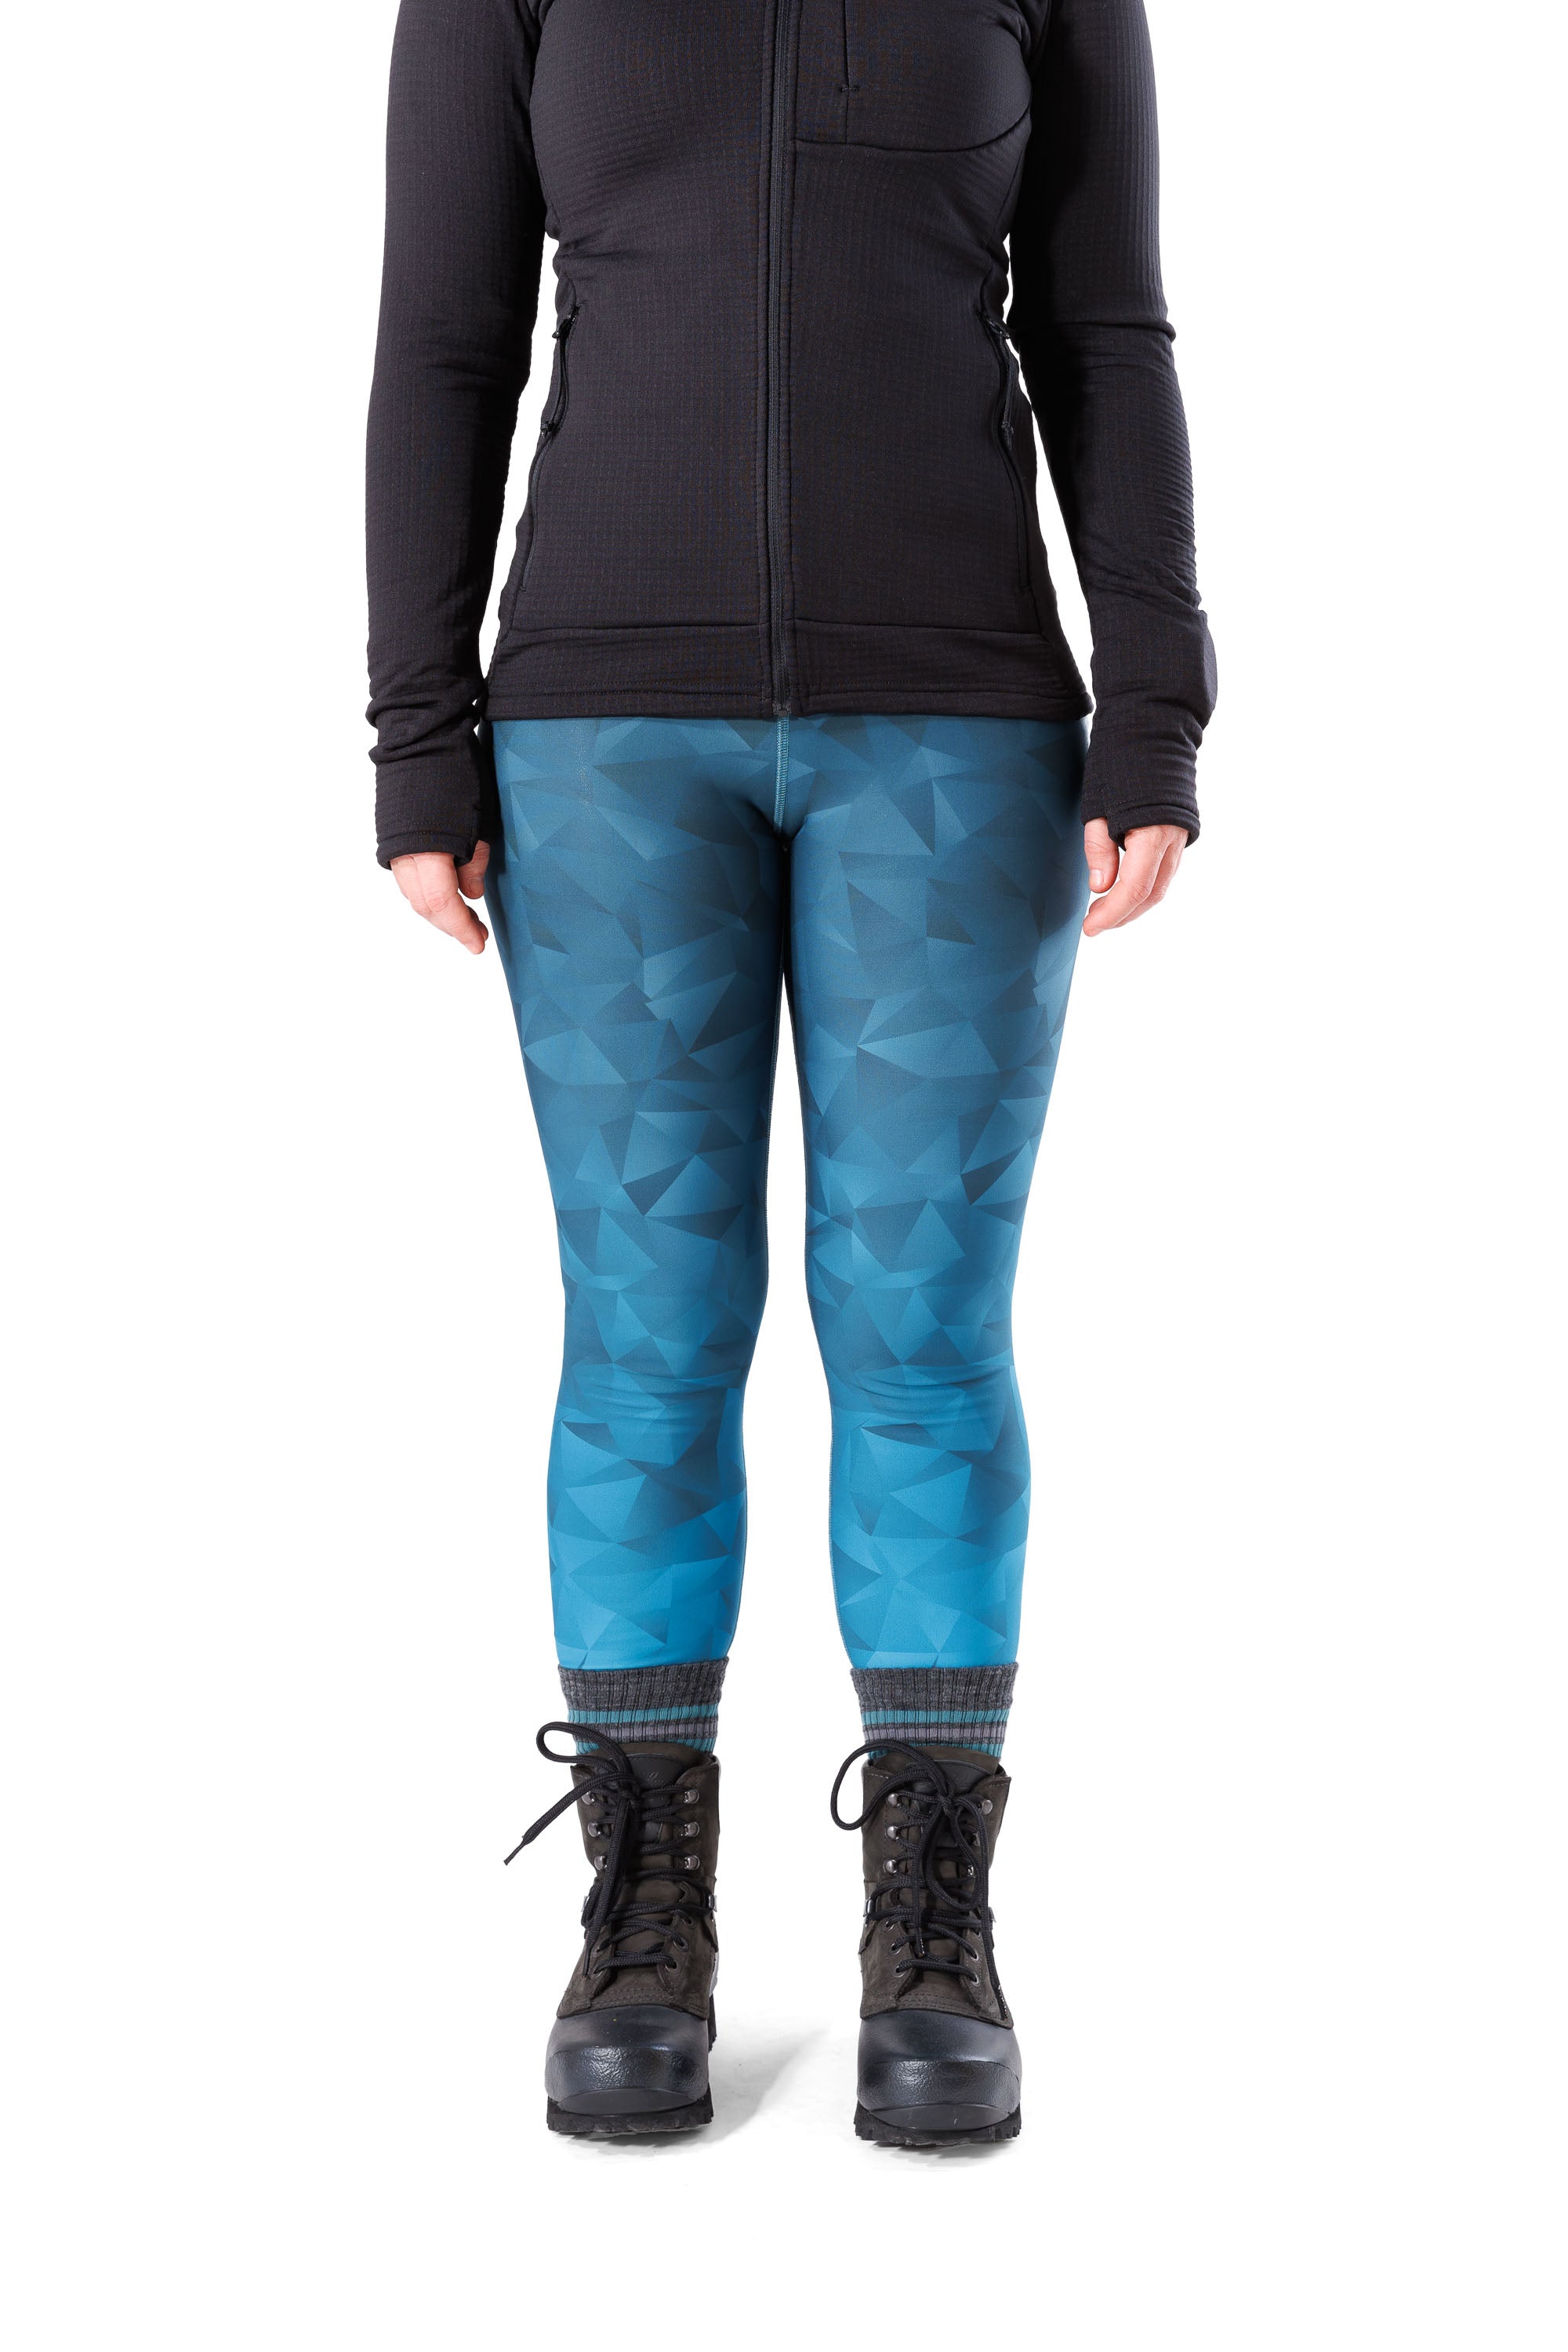 APEX Winter Leggings Arctic – Alpine Nation Outdoor Clothing